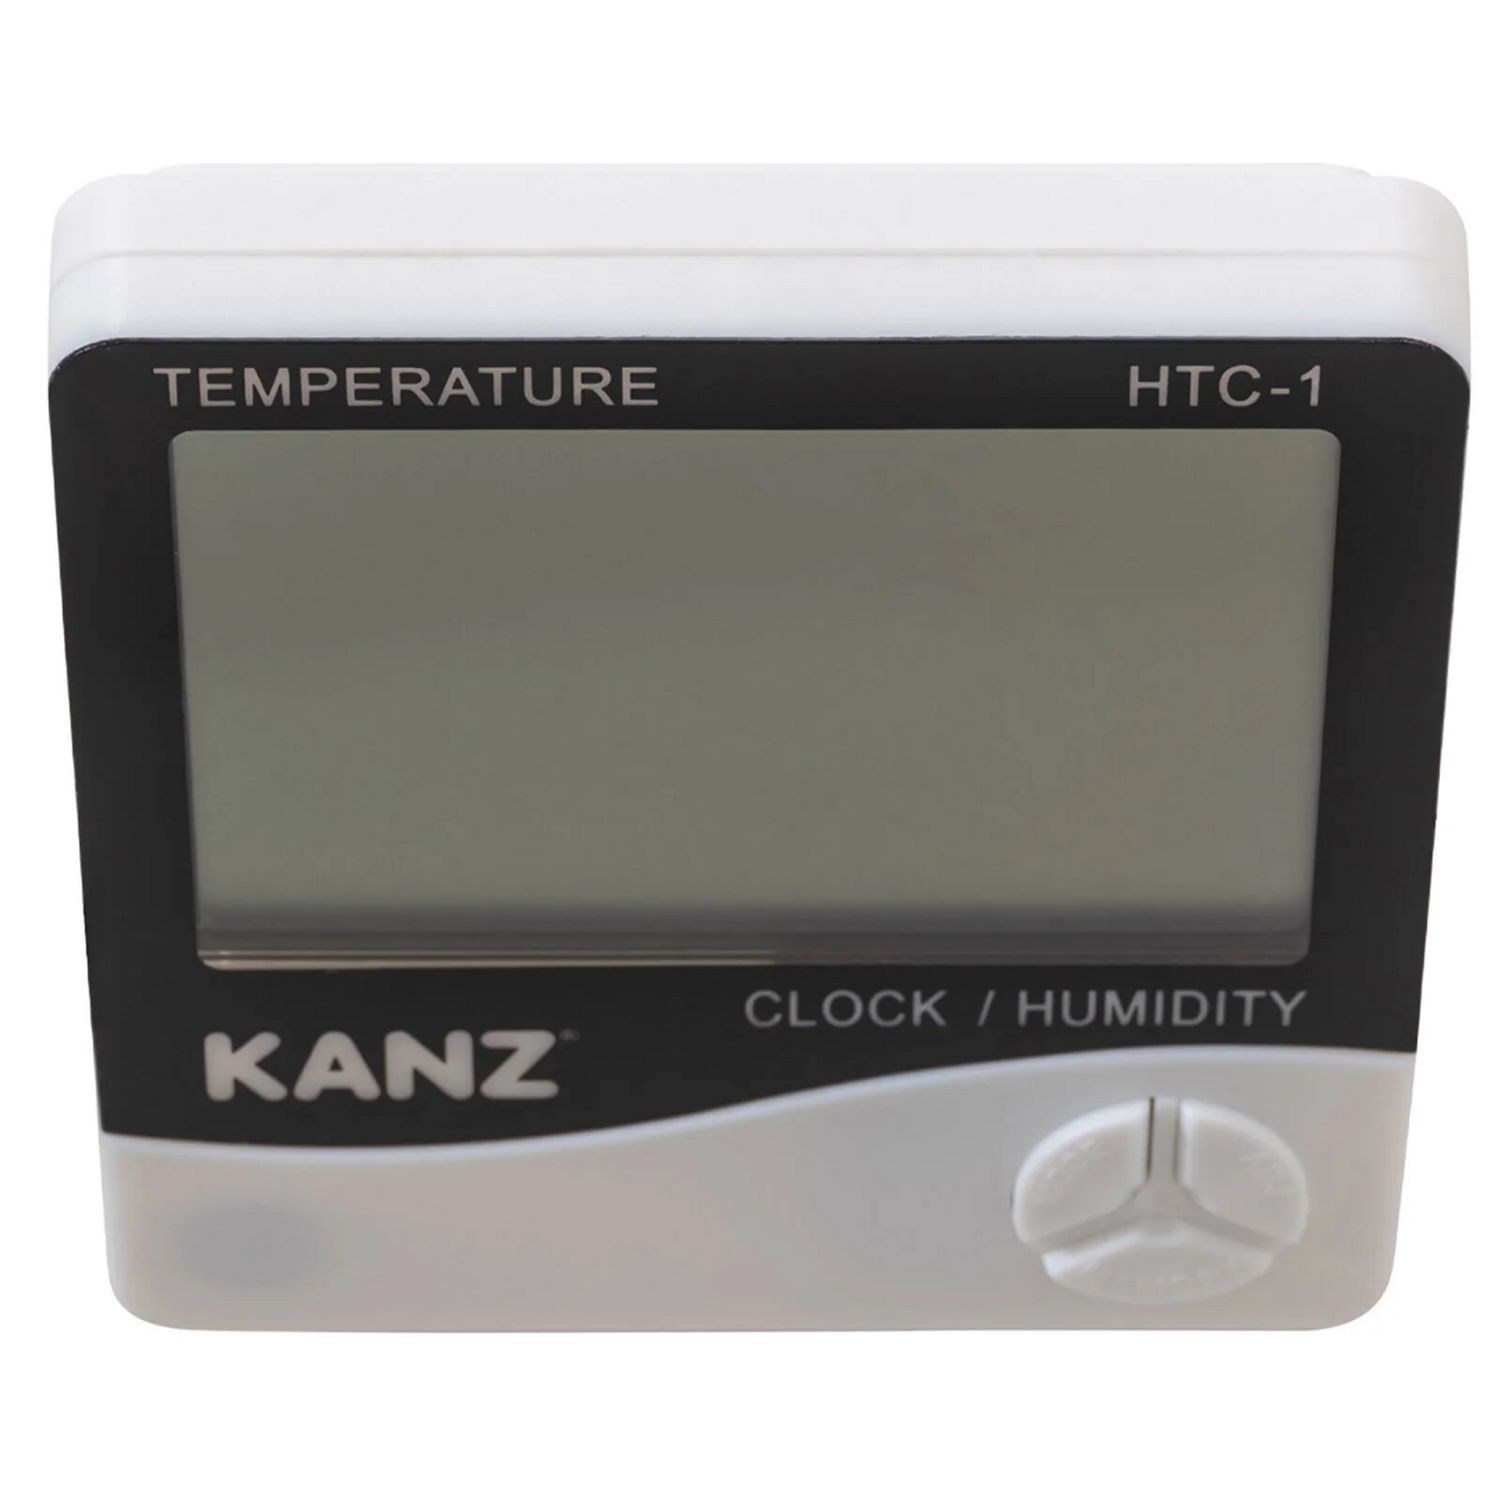 Kanz Hygrometre-Termometre HTC-1 Beyaz